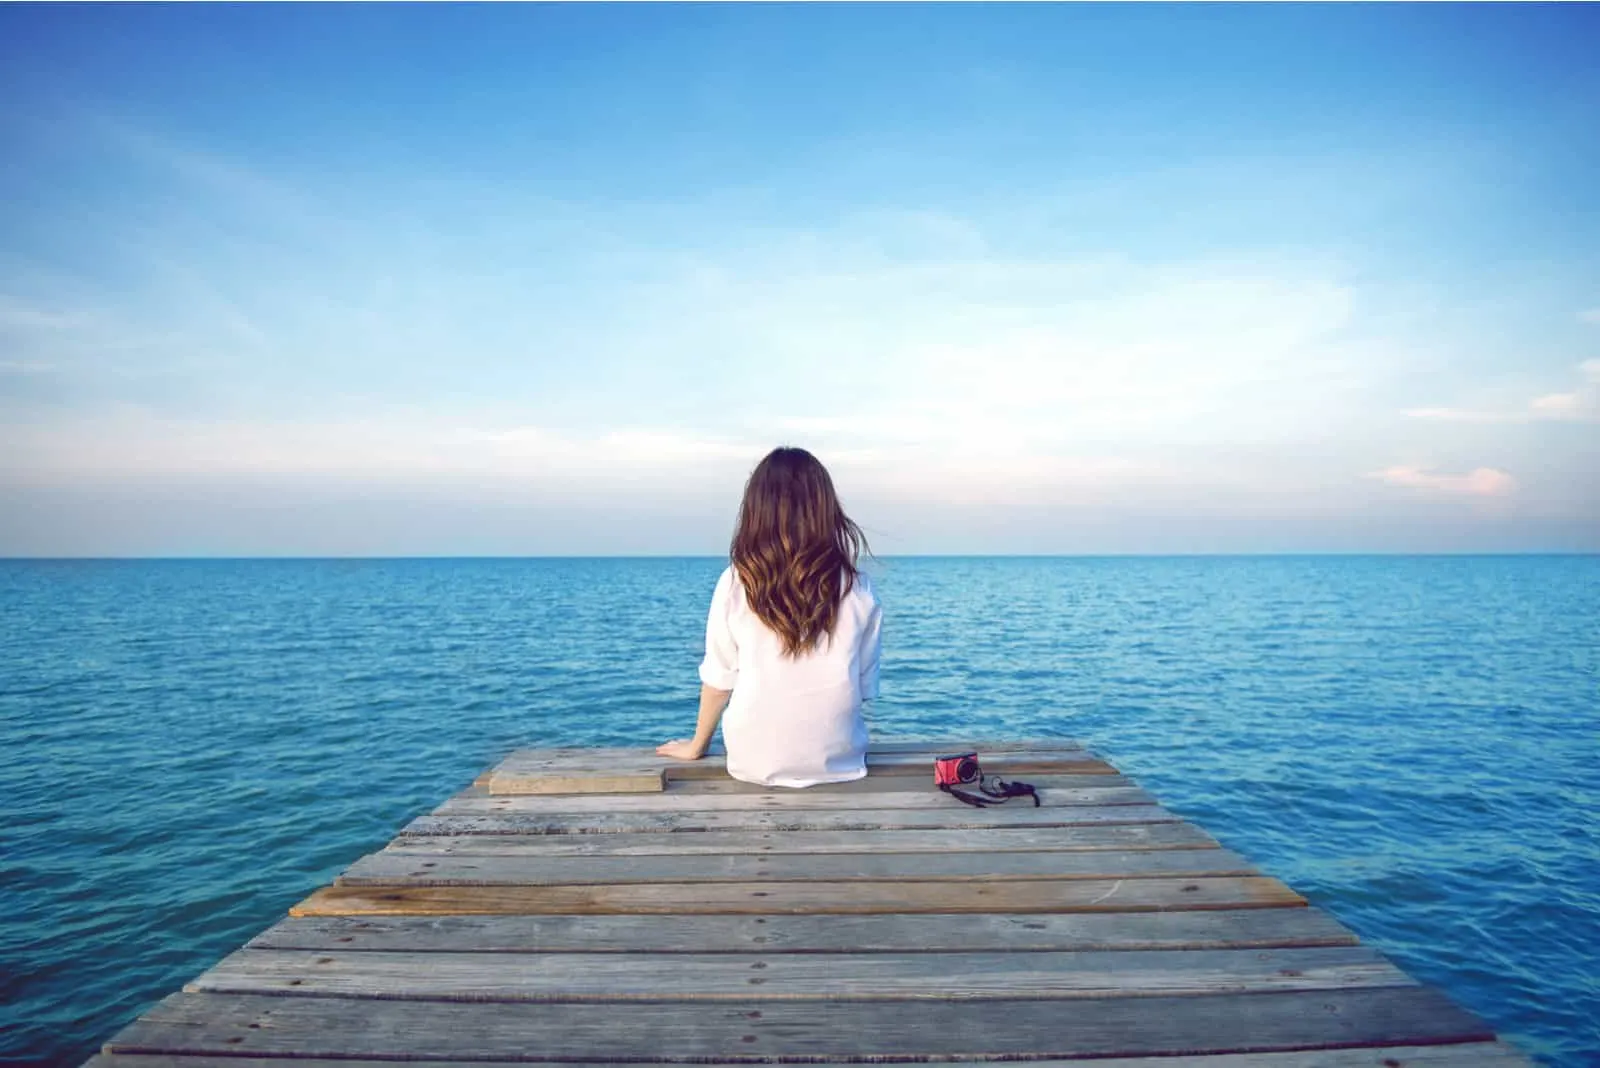 Eine imaginäre Frau sitzt auf einem Pier und schaut auf das Meer